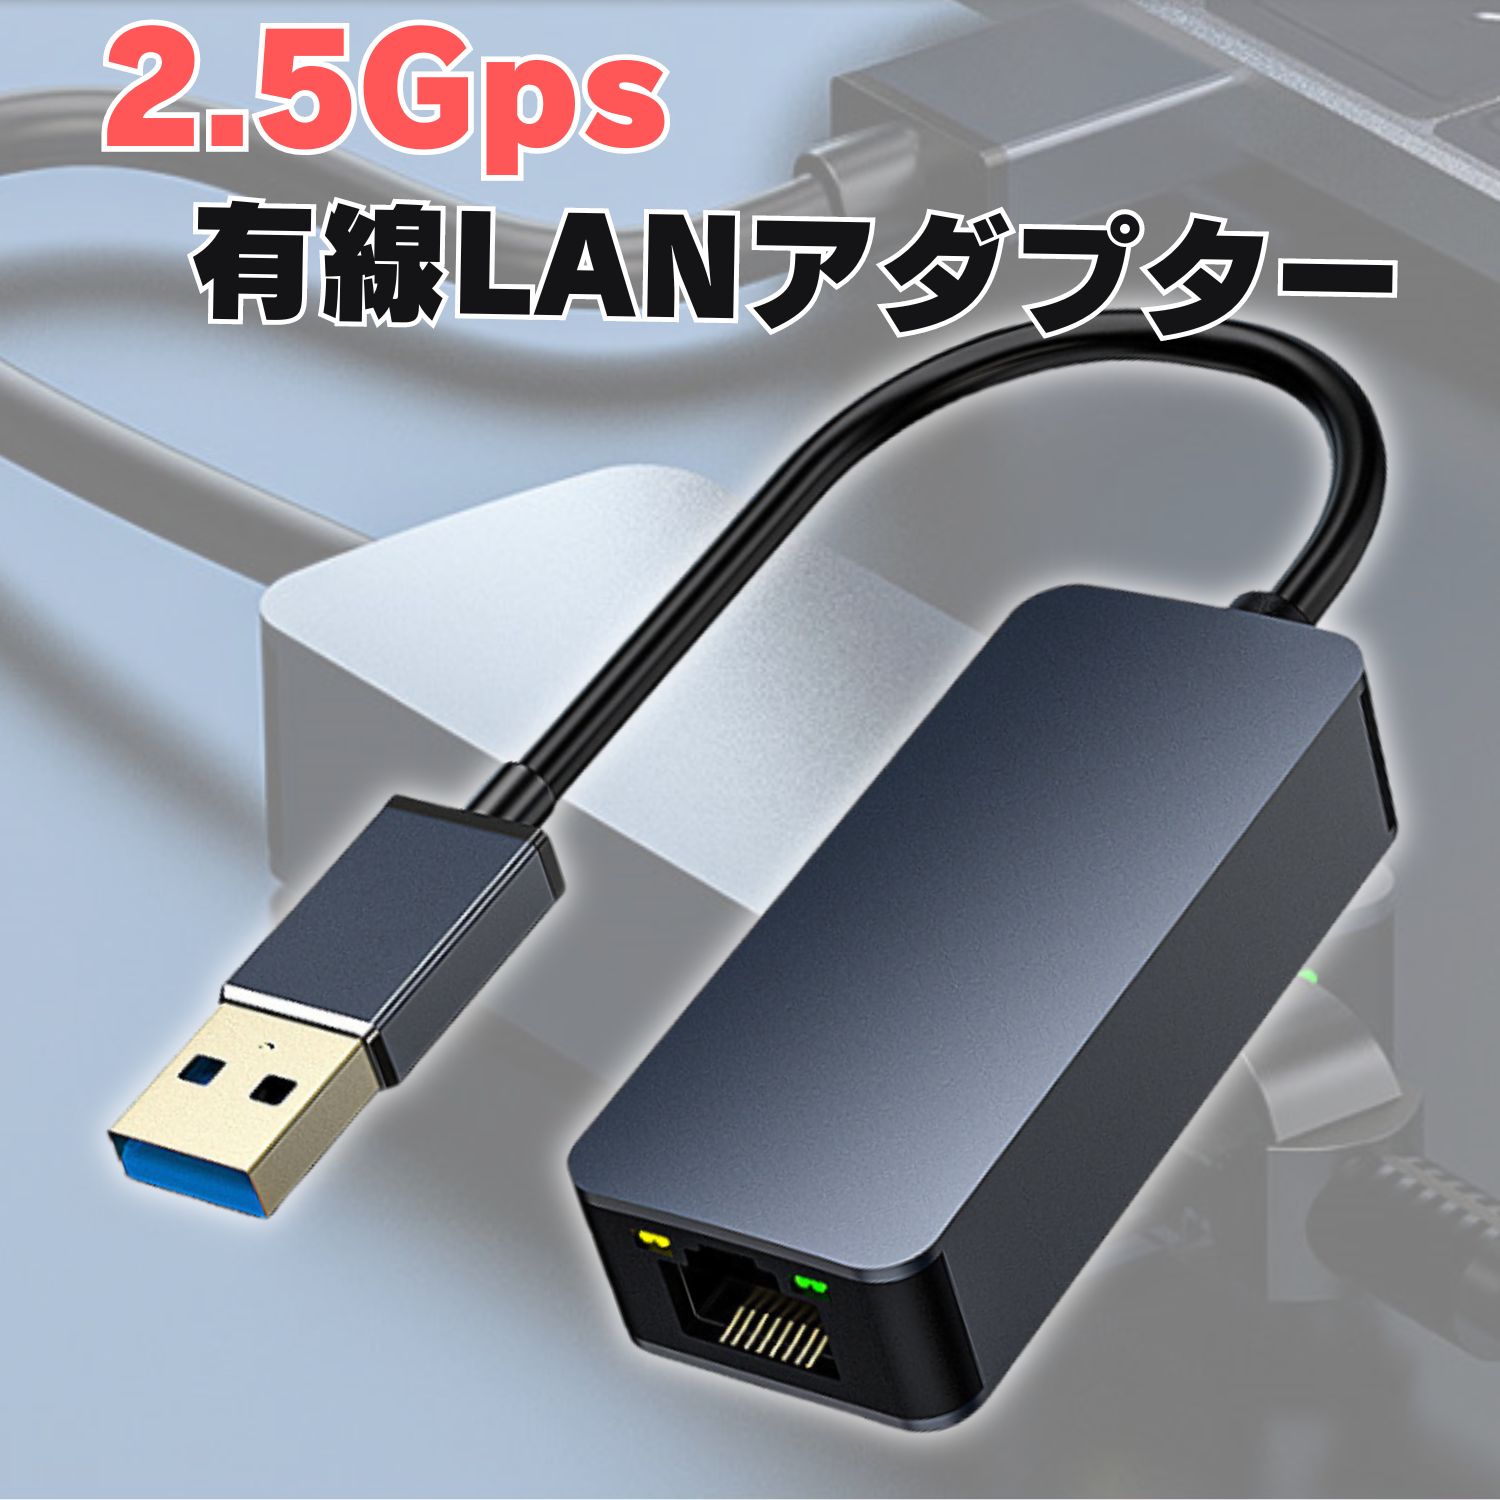 2.5G 有線LANアダプター USB3.0 ギガビット 2500Mbps 変換アダプタ RJ45 LANアダプタ イーサネット Ethernet